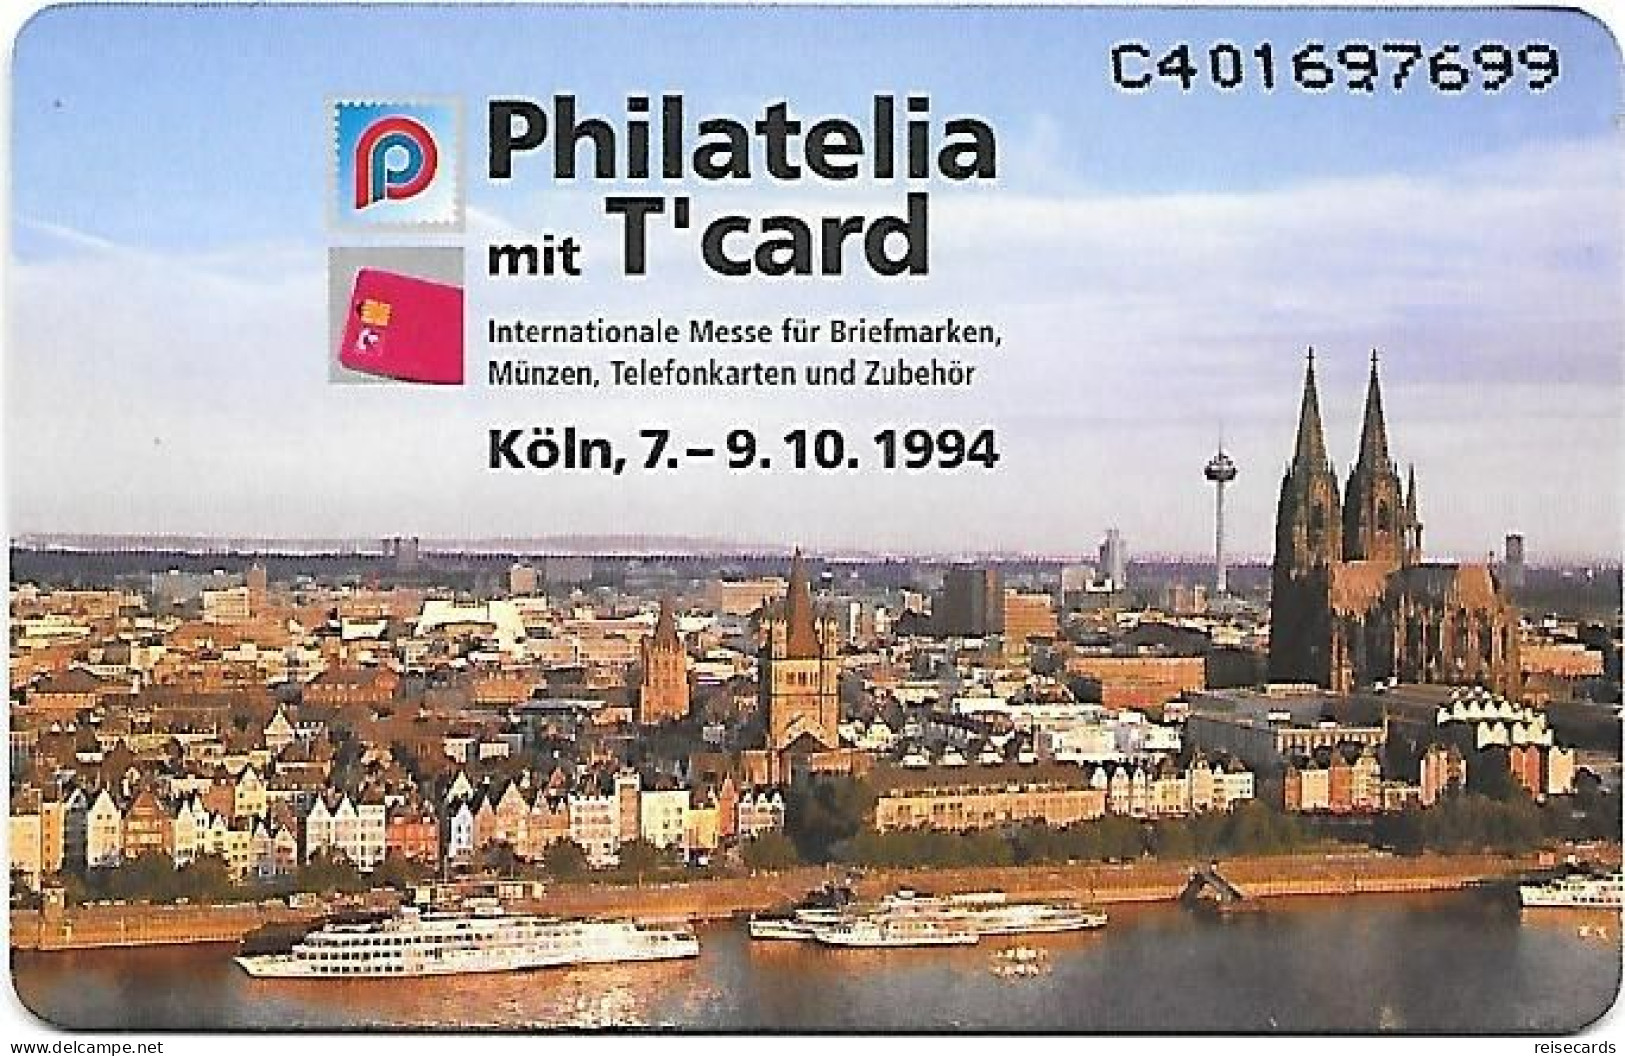 Netherlands: Ptt Telecom - 1994 Philatelia Mit T'card Exhibition 94, Köln. Mint - Publiques